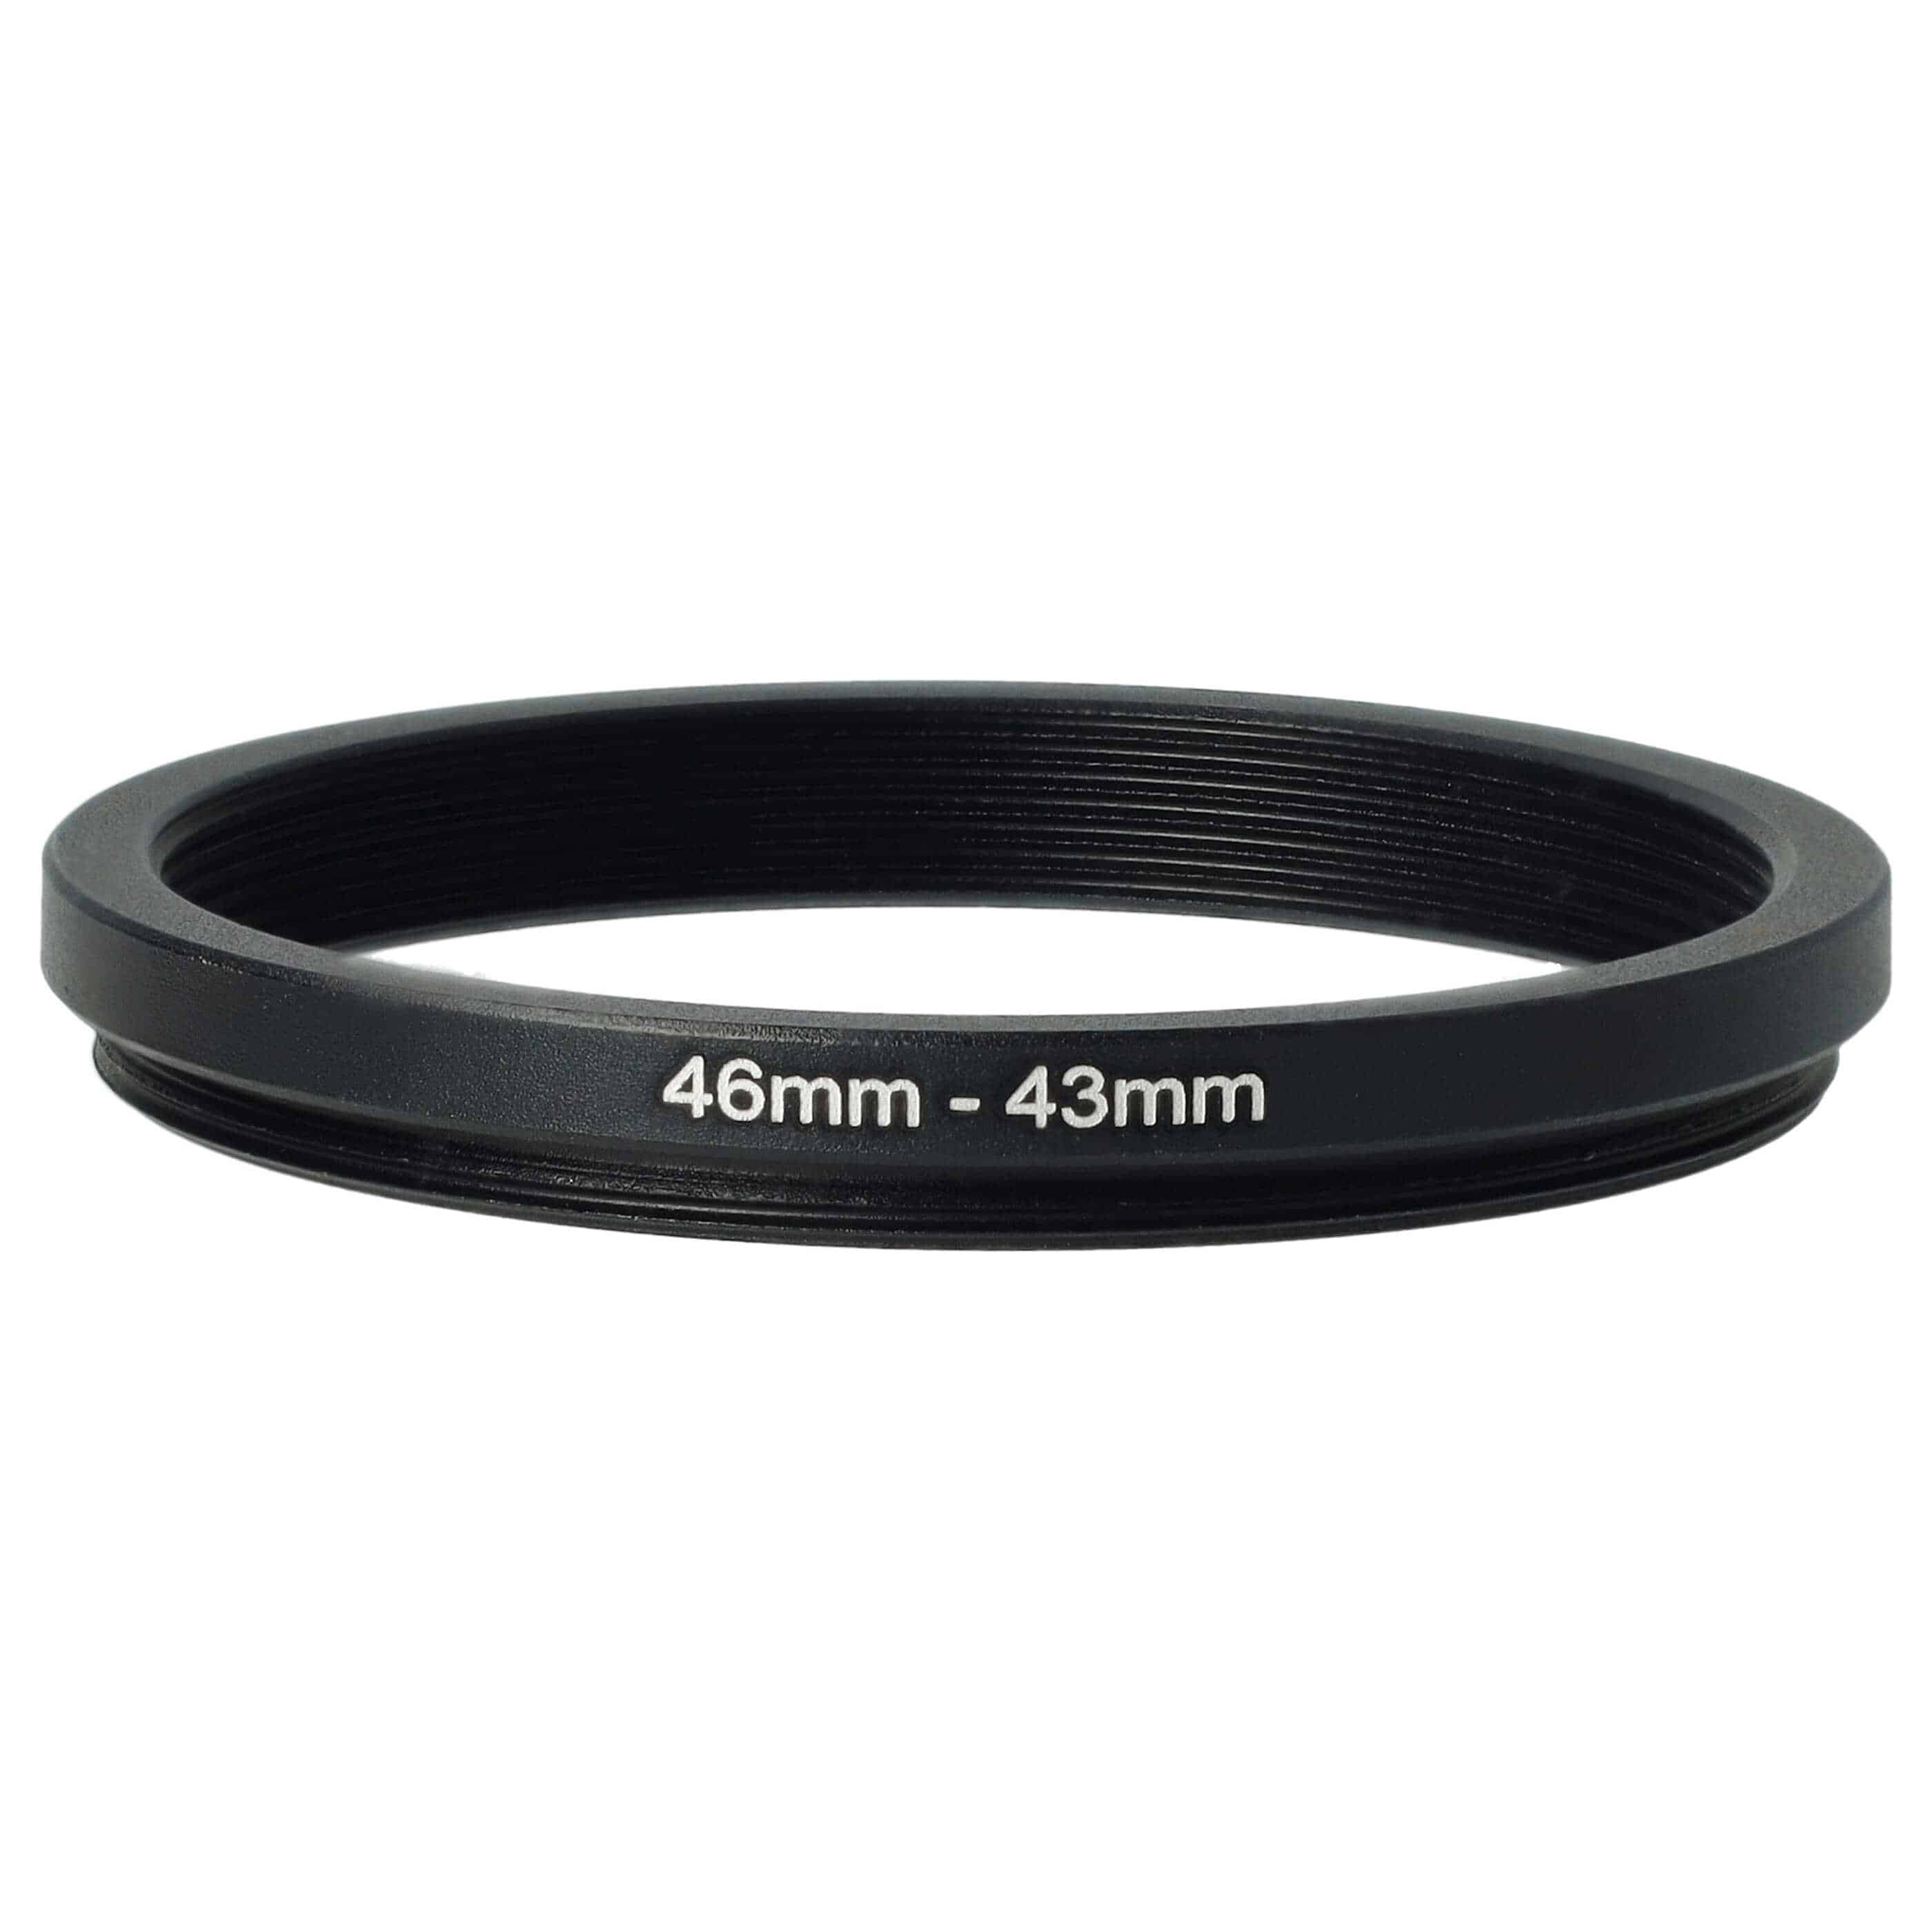 Anillo adaptador Step Down de 46 mm a 43 mm para objetivo de la cámara - Adaptador de filtro, metal, negro